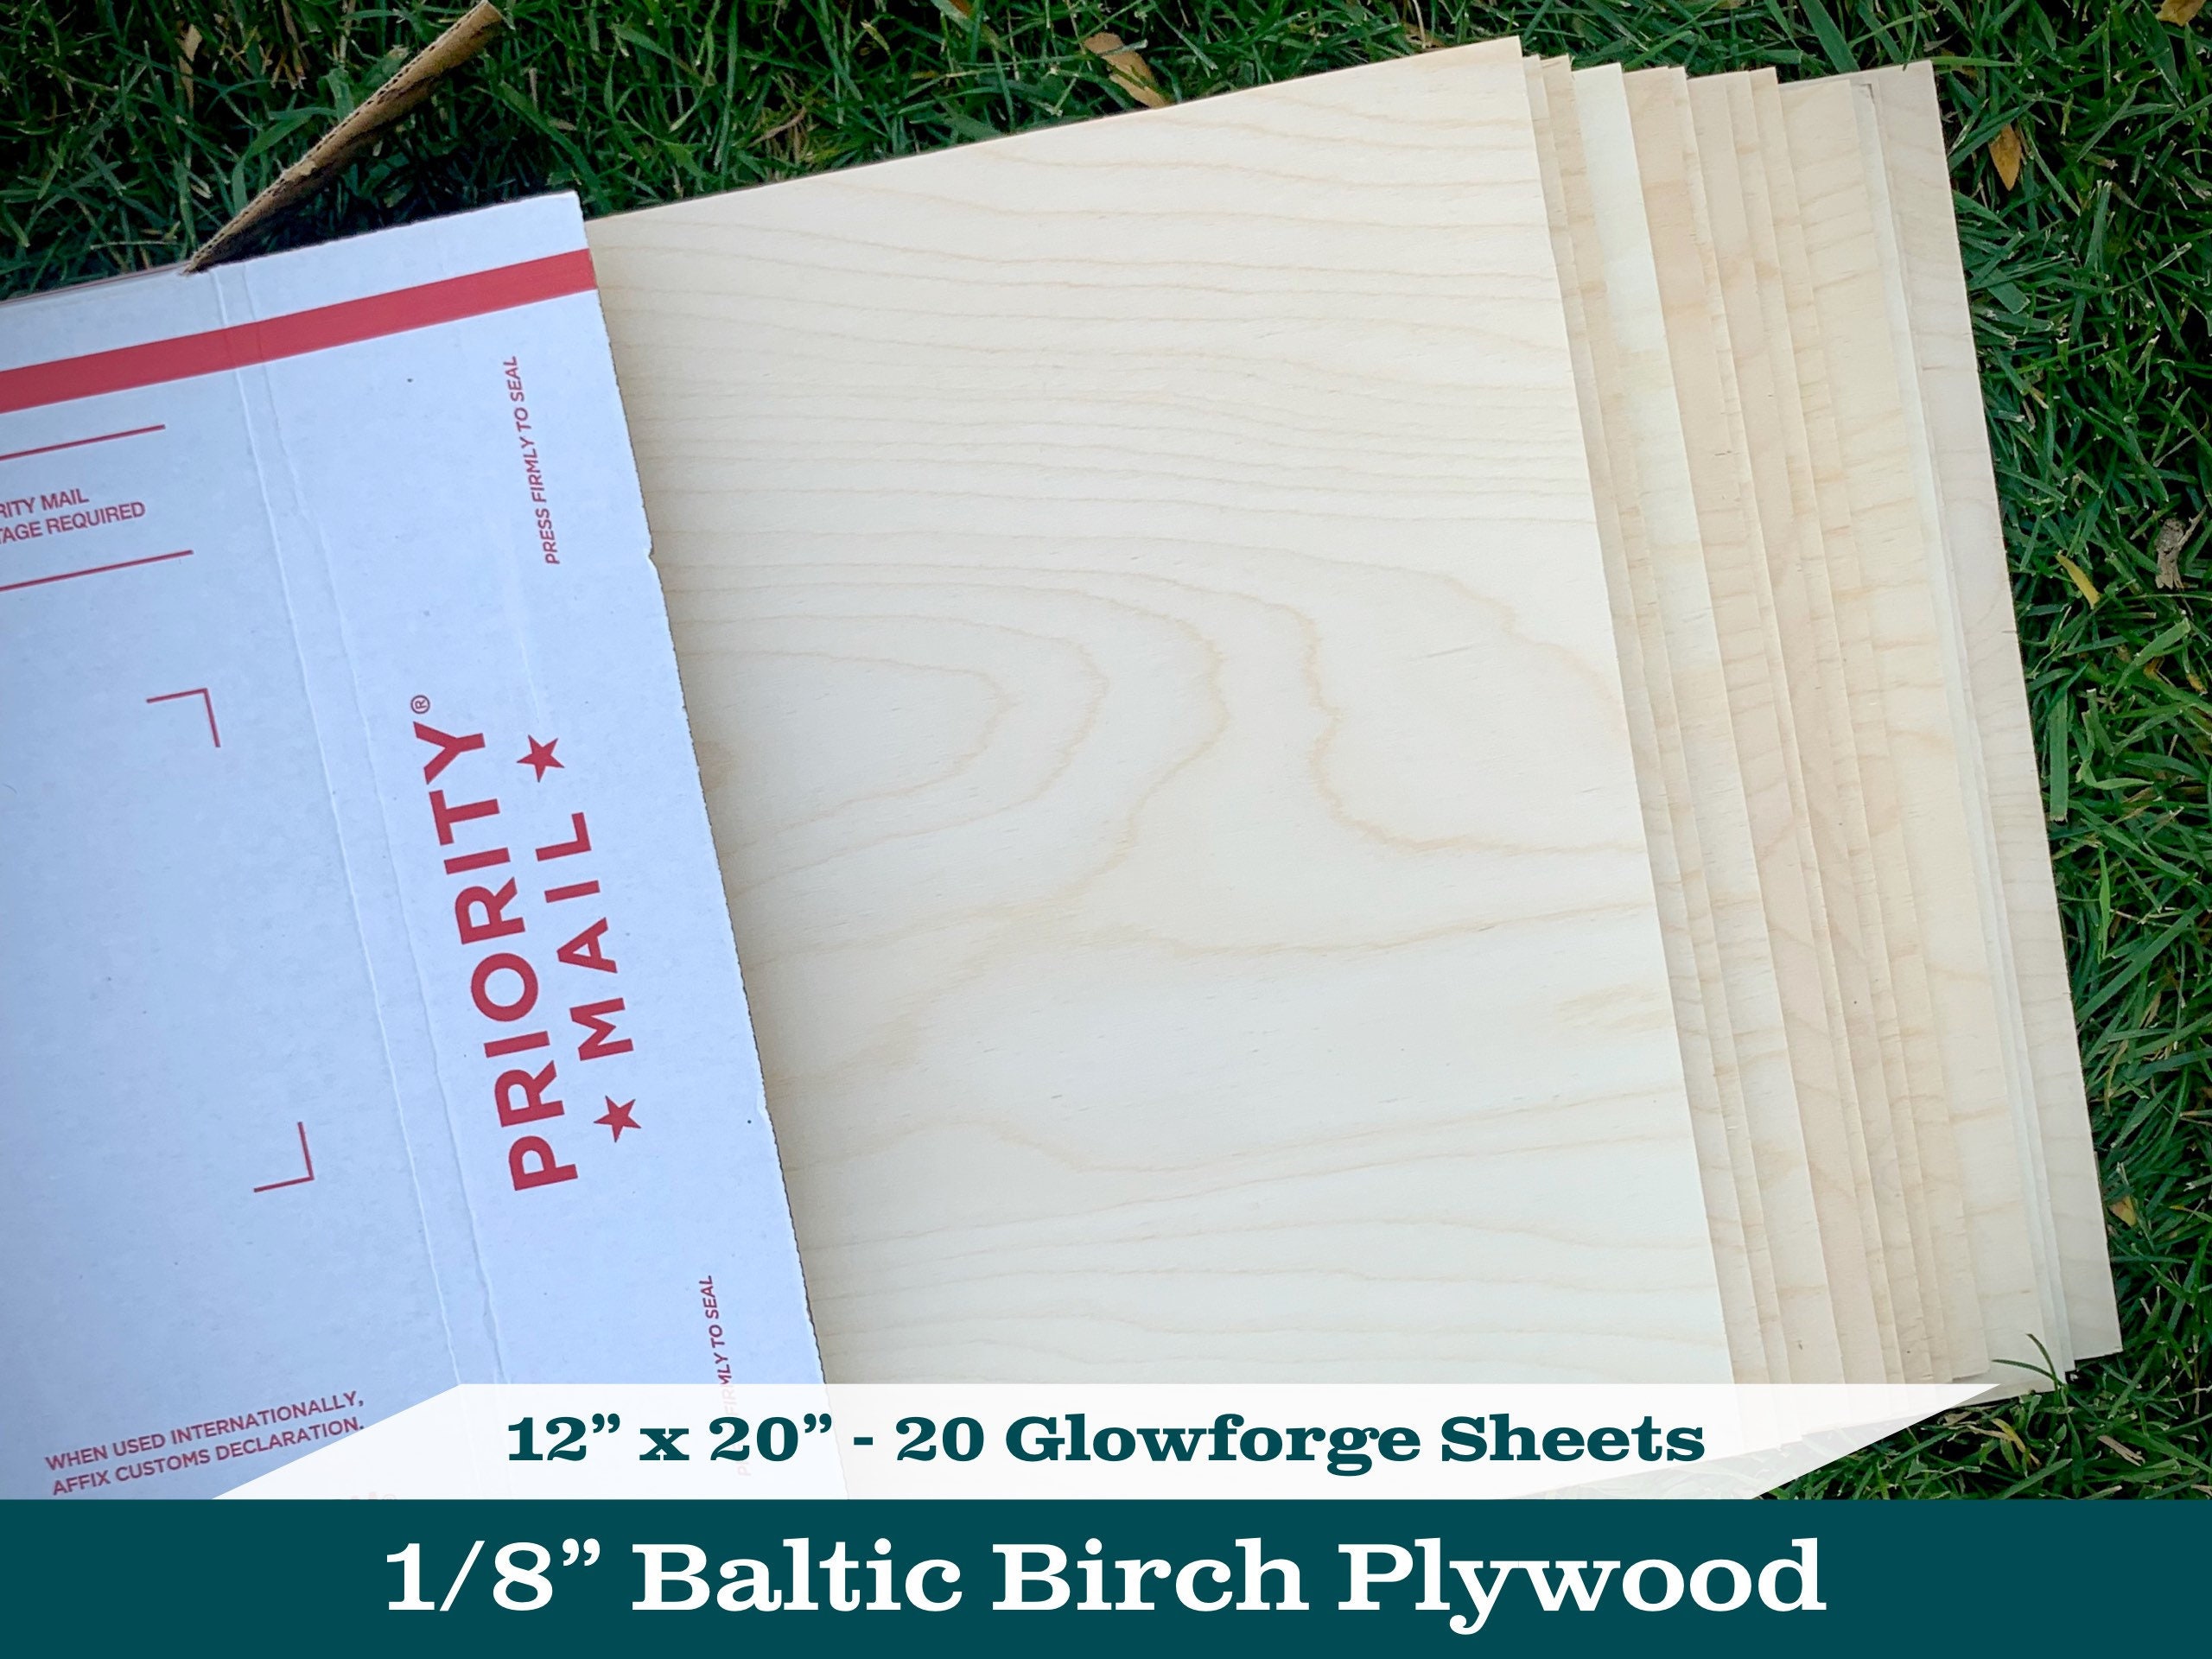 1/8” inch (3mm) Baltic Birch Plywood b/bb grade glowforge laser 20 she